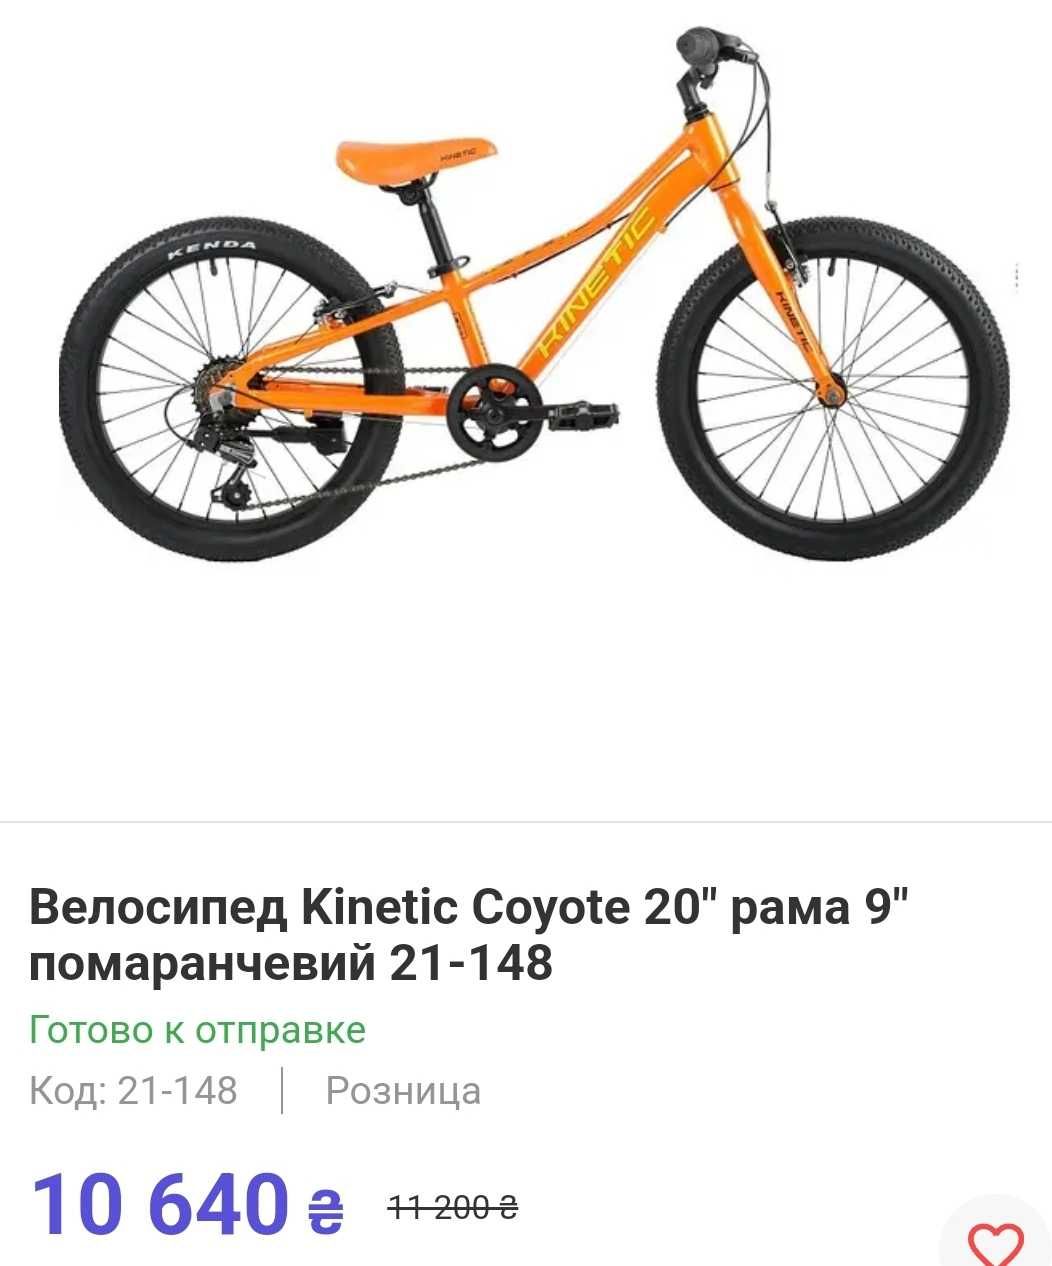 Велосипед Kinetic Koyote 20"колеса 5-8 років